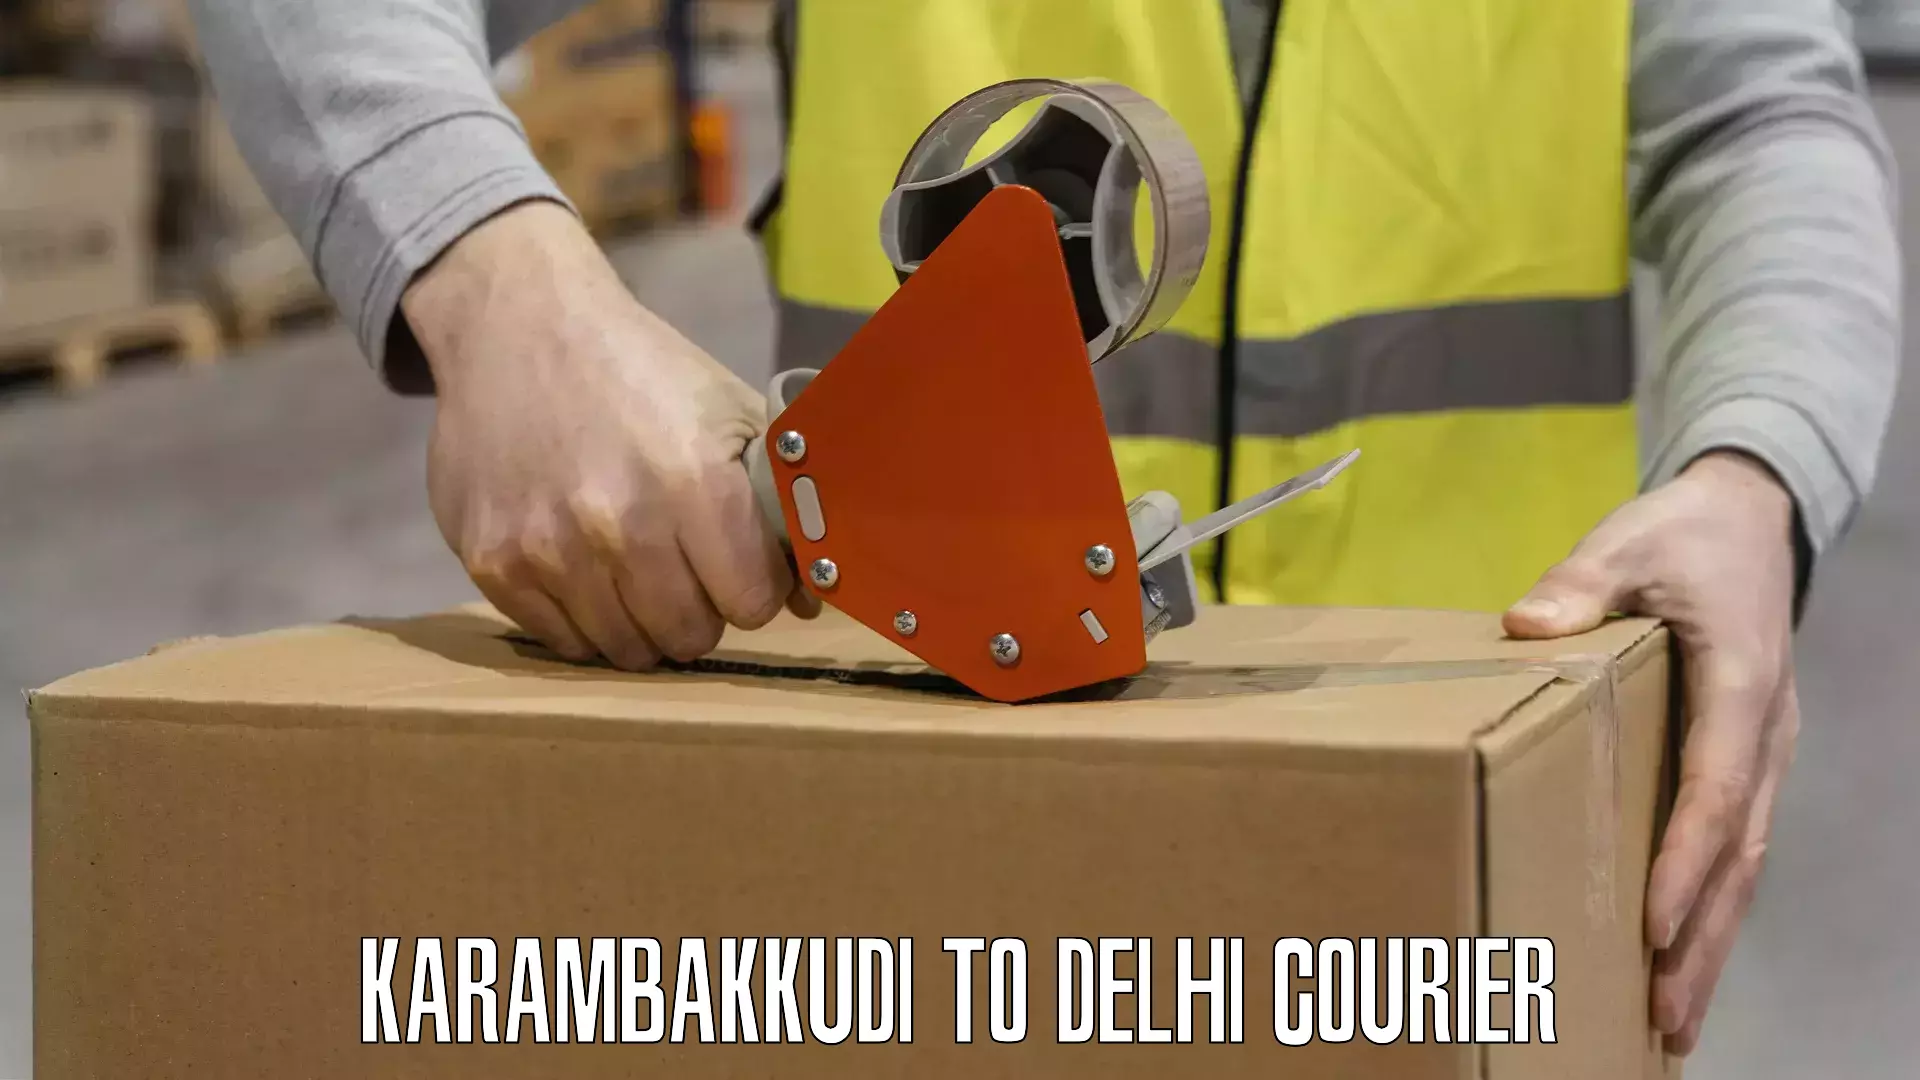 Advanced logistics management Karambakkudi to East Delhi